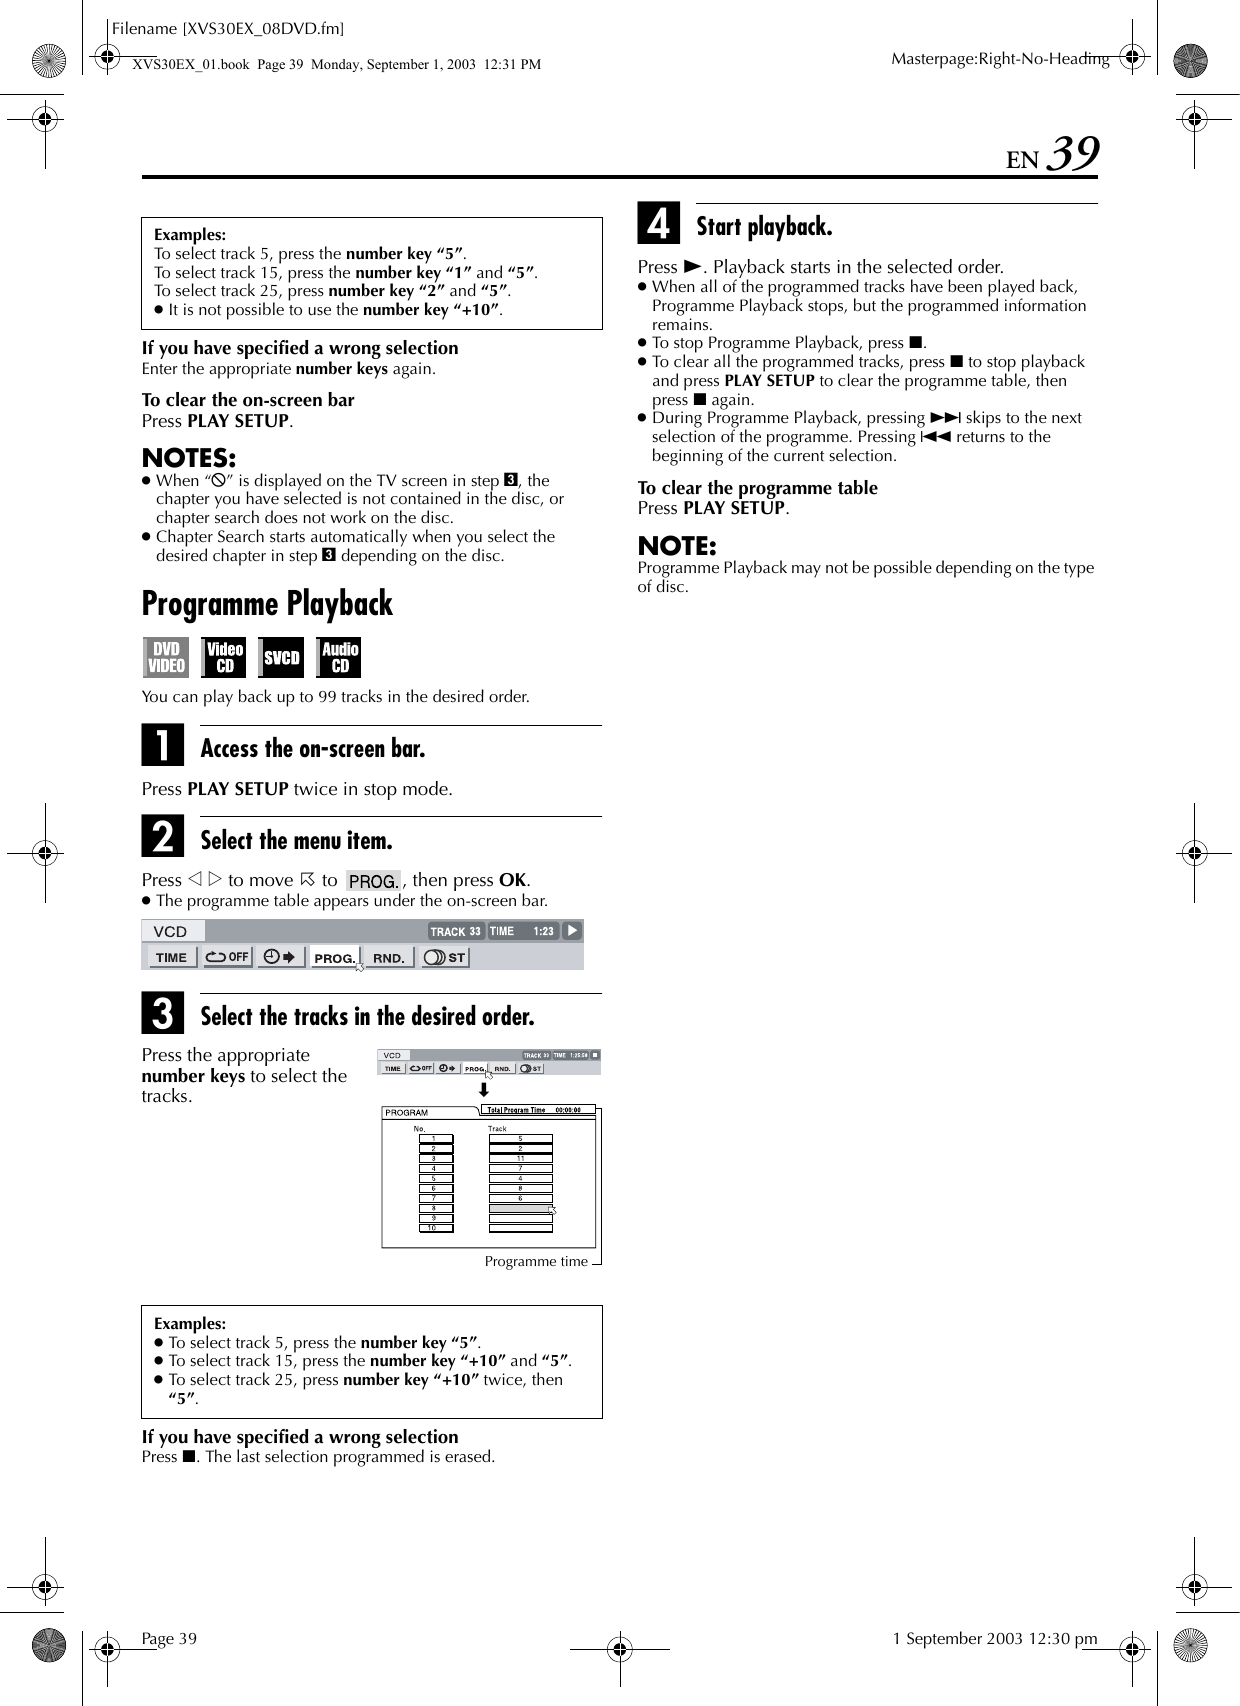 JVC HR XVS30E User Manual LPT0860 001A